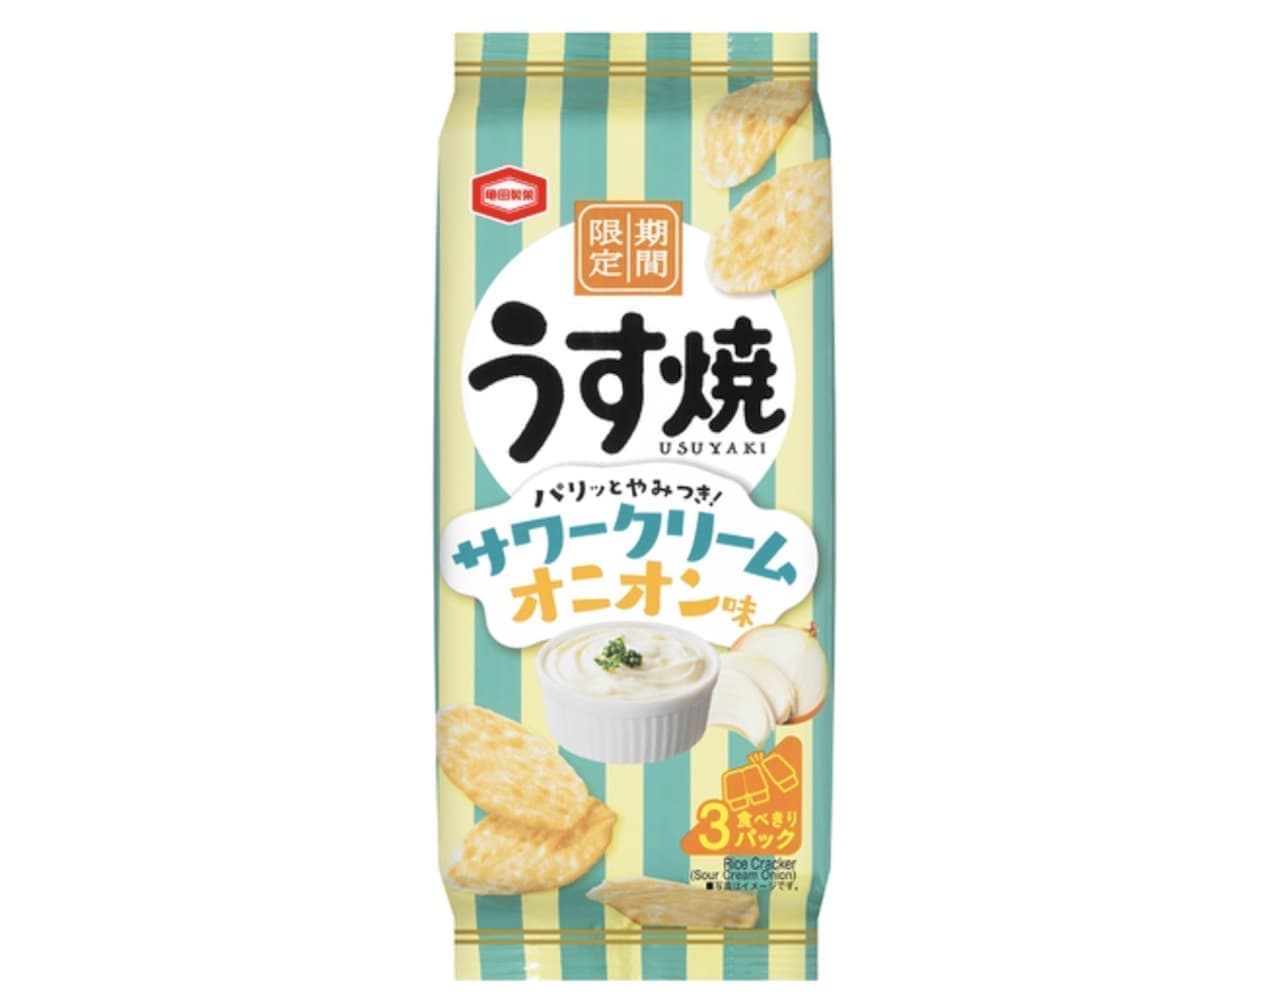 「うす焼 サワークリームオニオン味」亀田製菓から